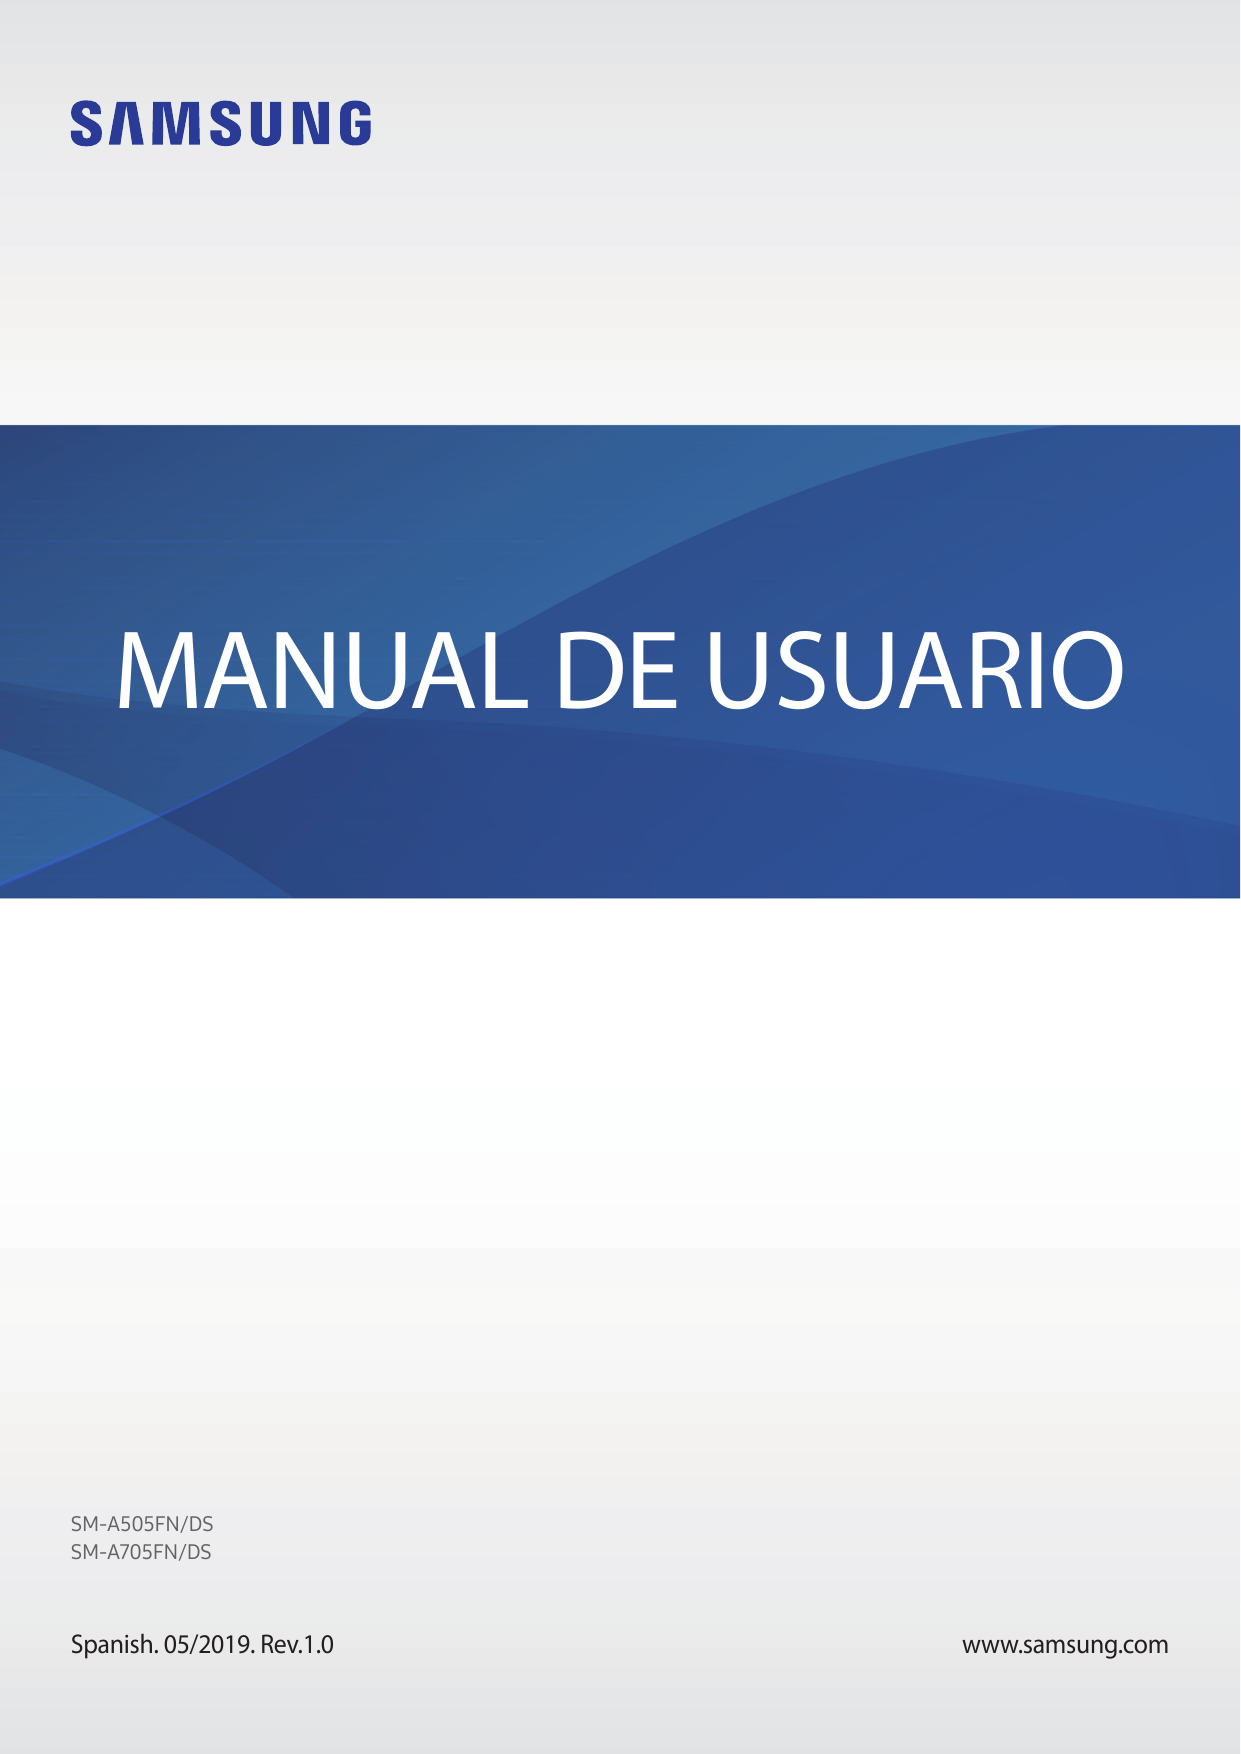 MANUAL DE USUARIOSM-A505FN/DSSM-A705FN/DSSpanish. 05/2019. Rev.1.0www.samsung.com